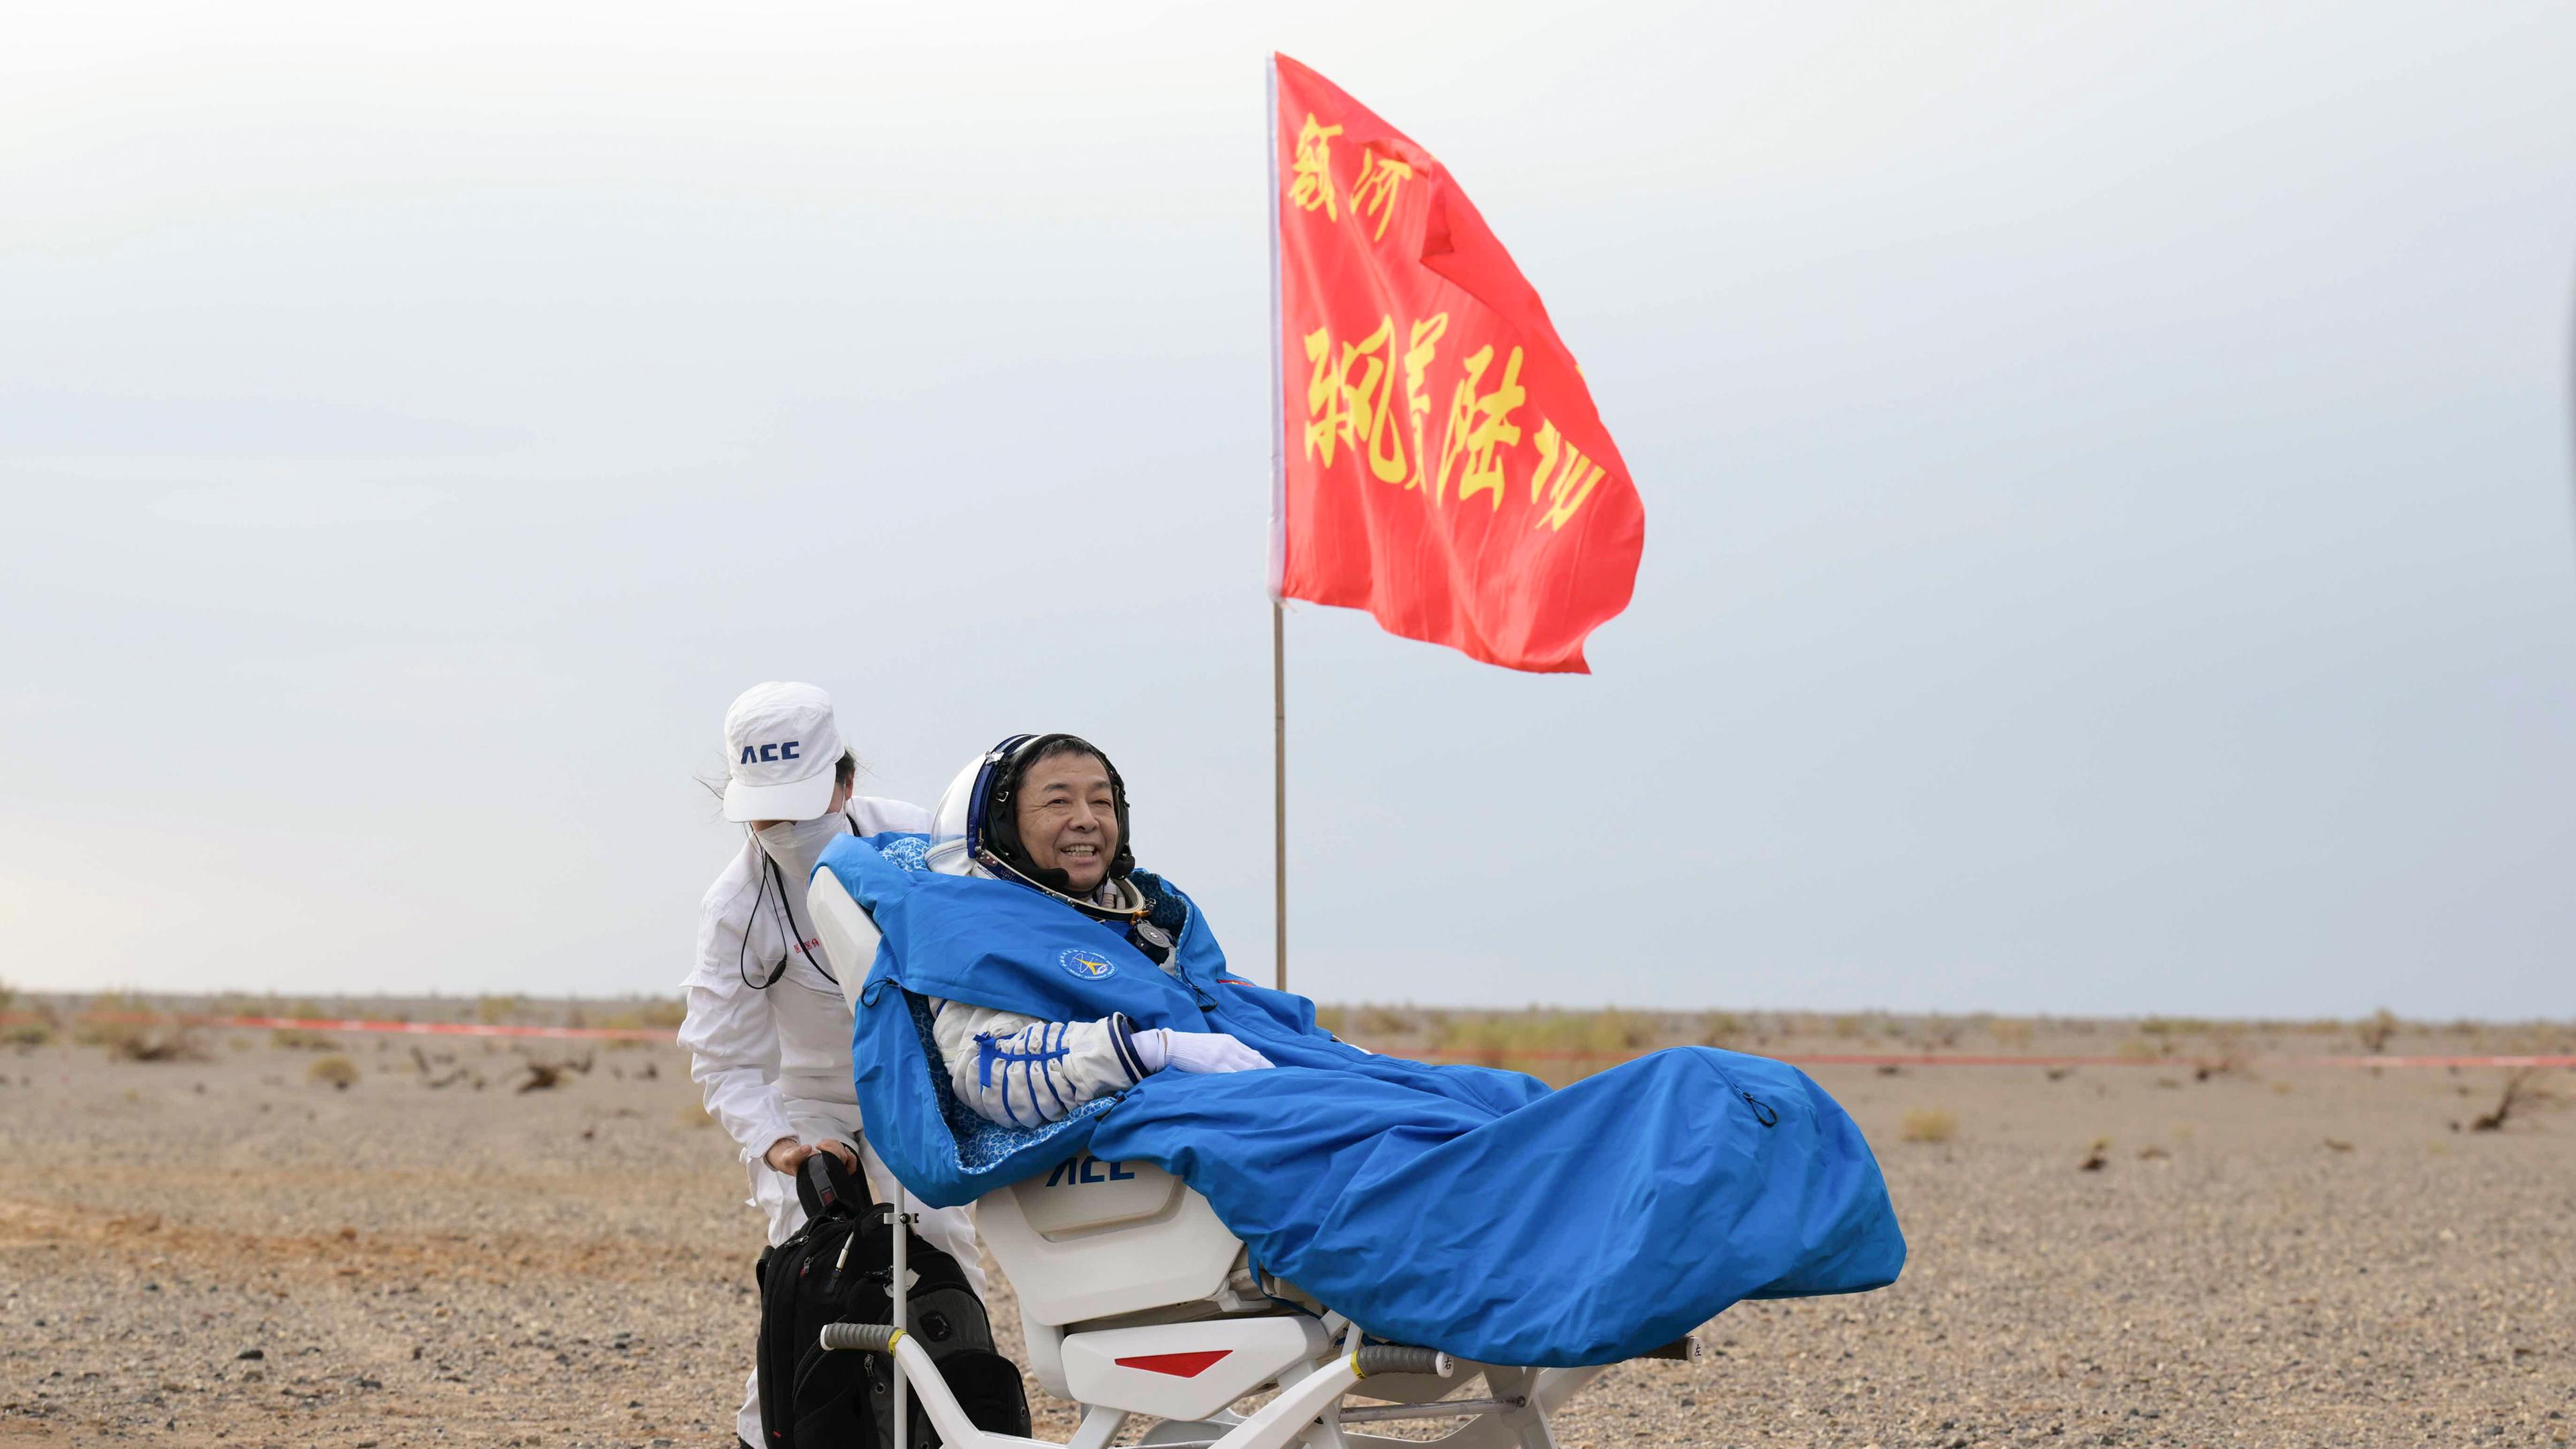 Der chinesische Astronaut Deng Qingming sitzt lachend auf einer Trage in der Wüste, neben ihm weht eine rote Flagge. 